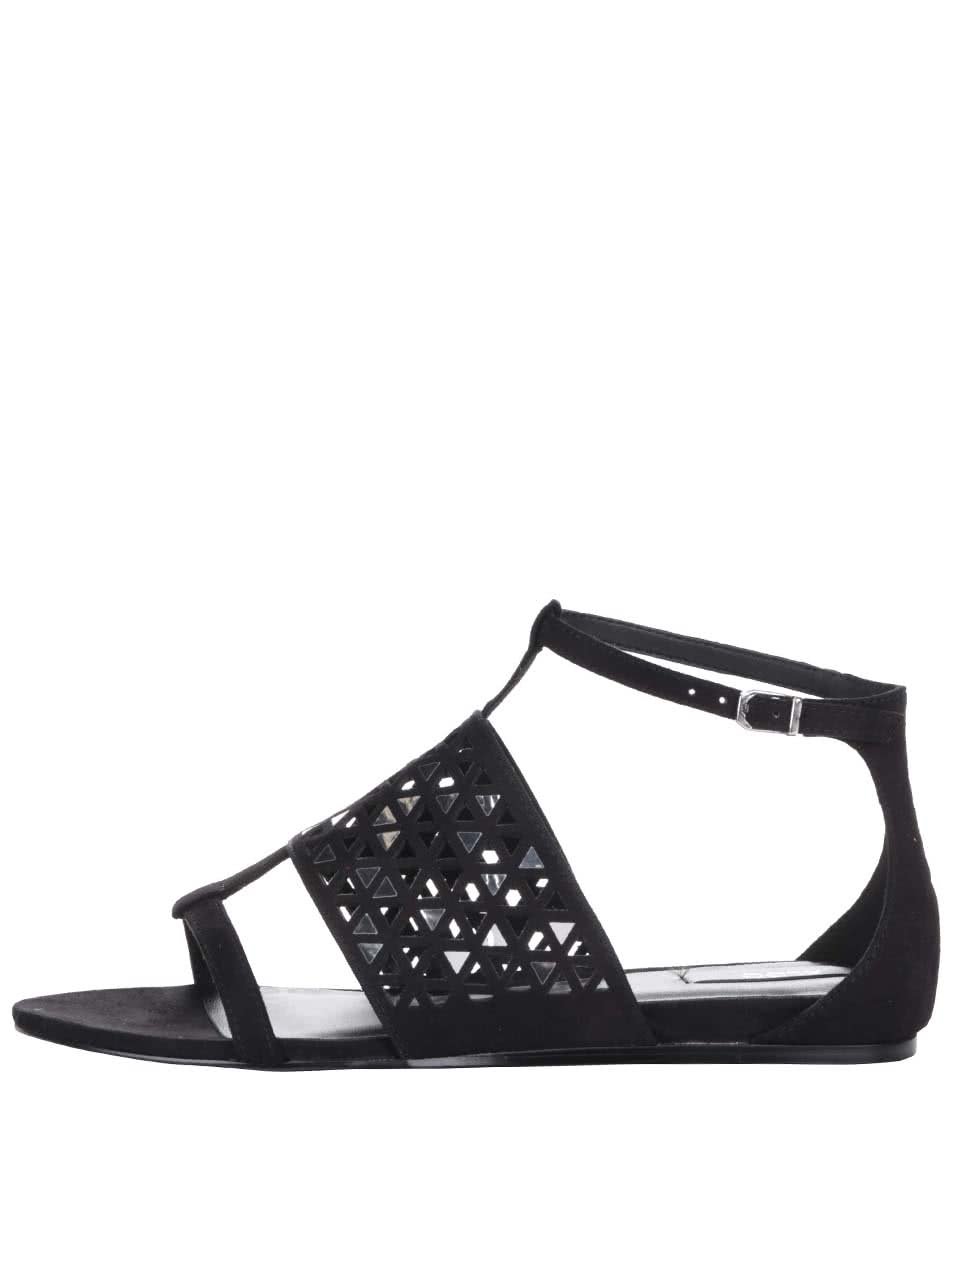 Černé sandály se zdobením ve stříbrné barvě ALDO Liliane